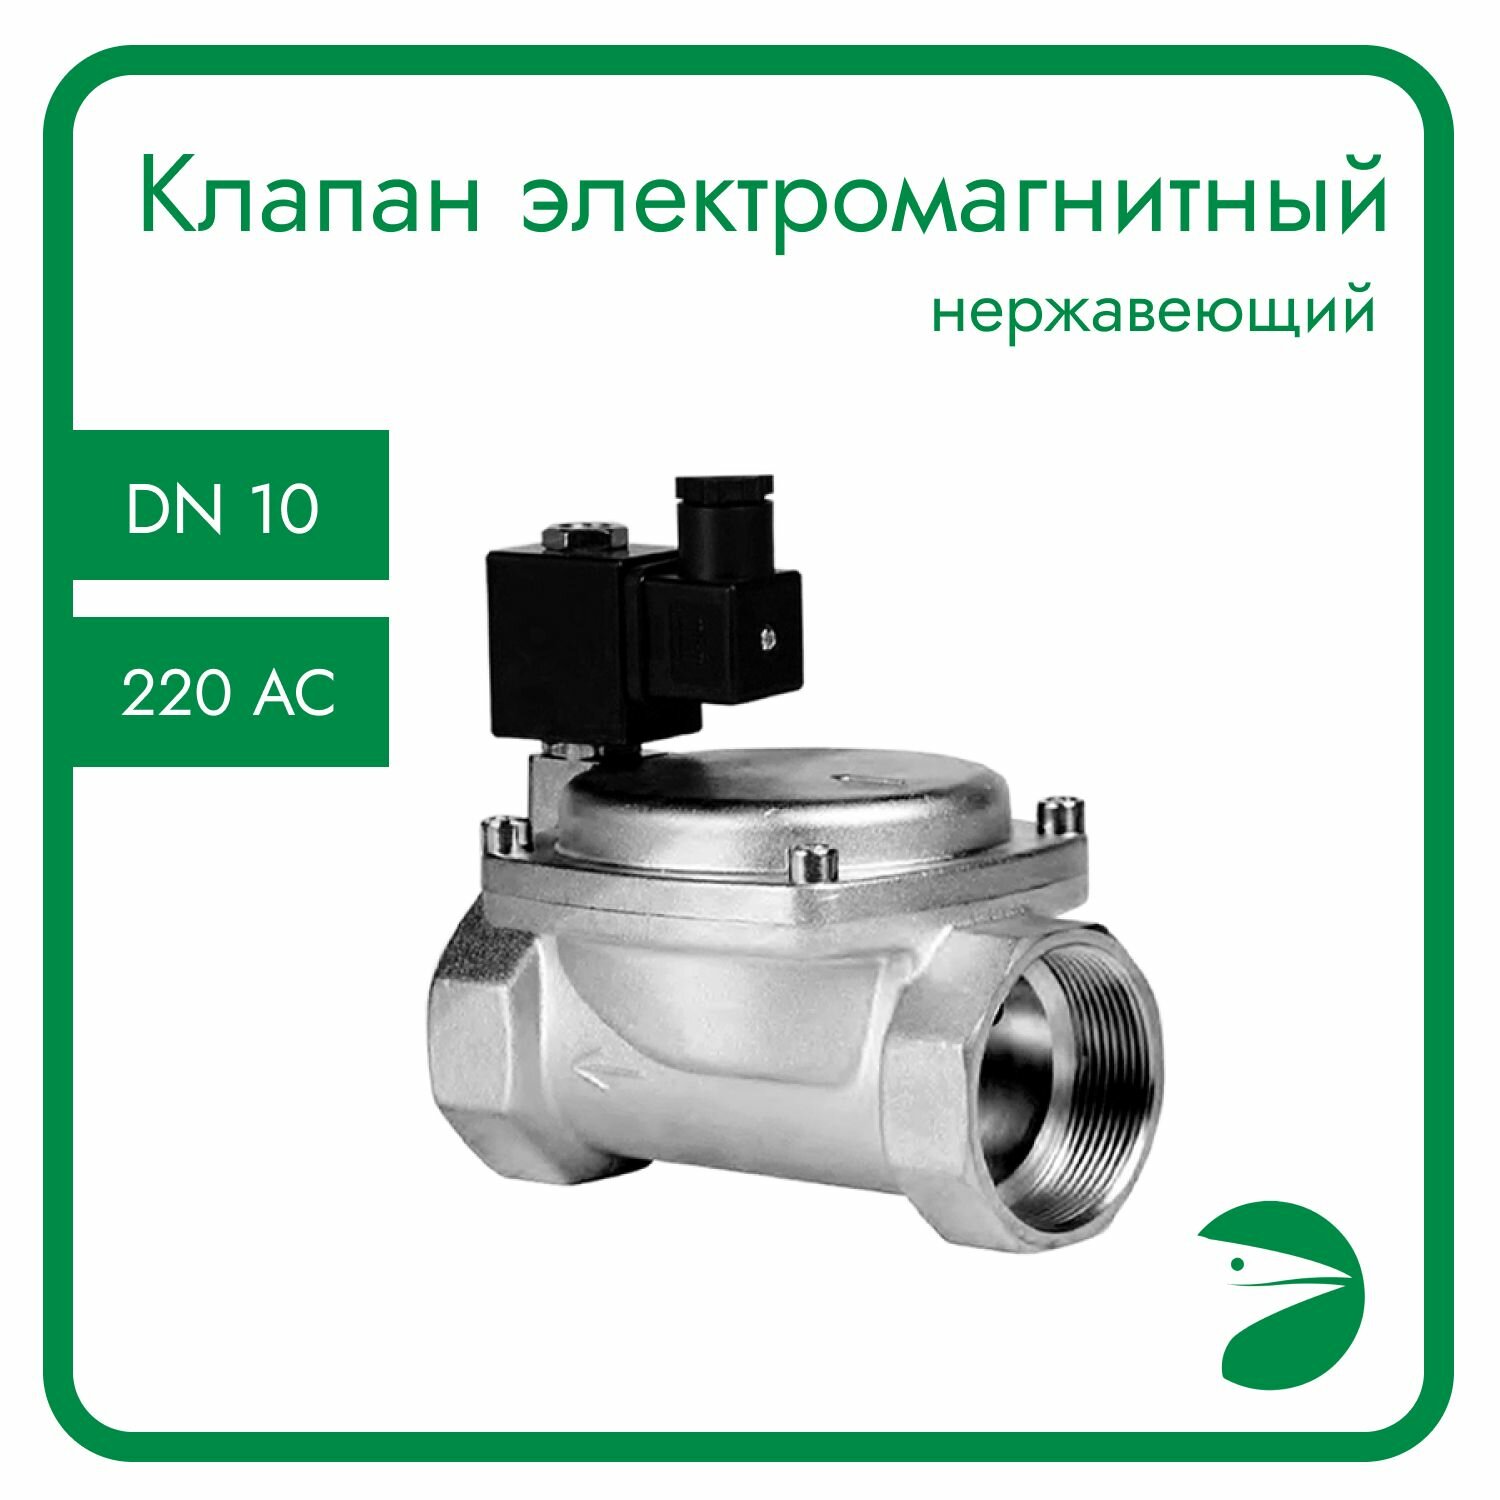 Клапан электромагнитный нержавеющий, обратного действия, нормально открытый, DN10 (3/8"), PN16,220AC